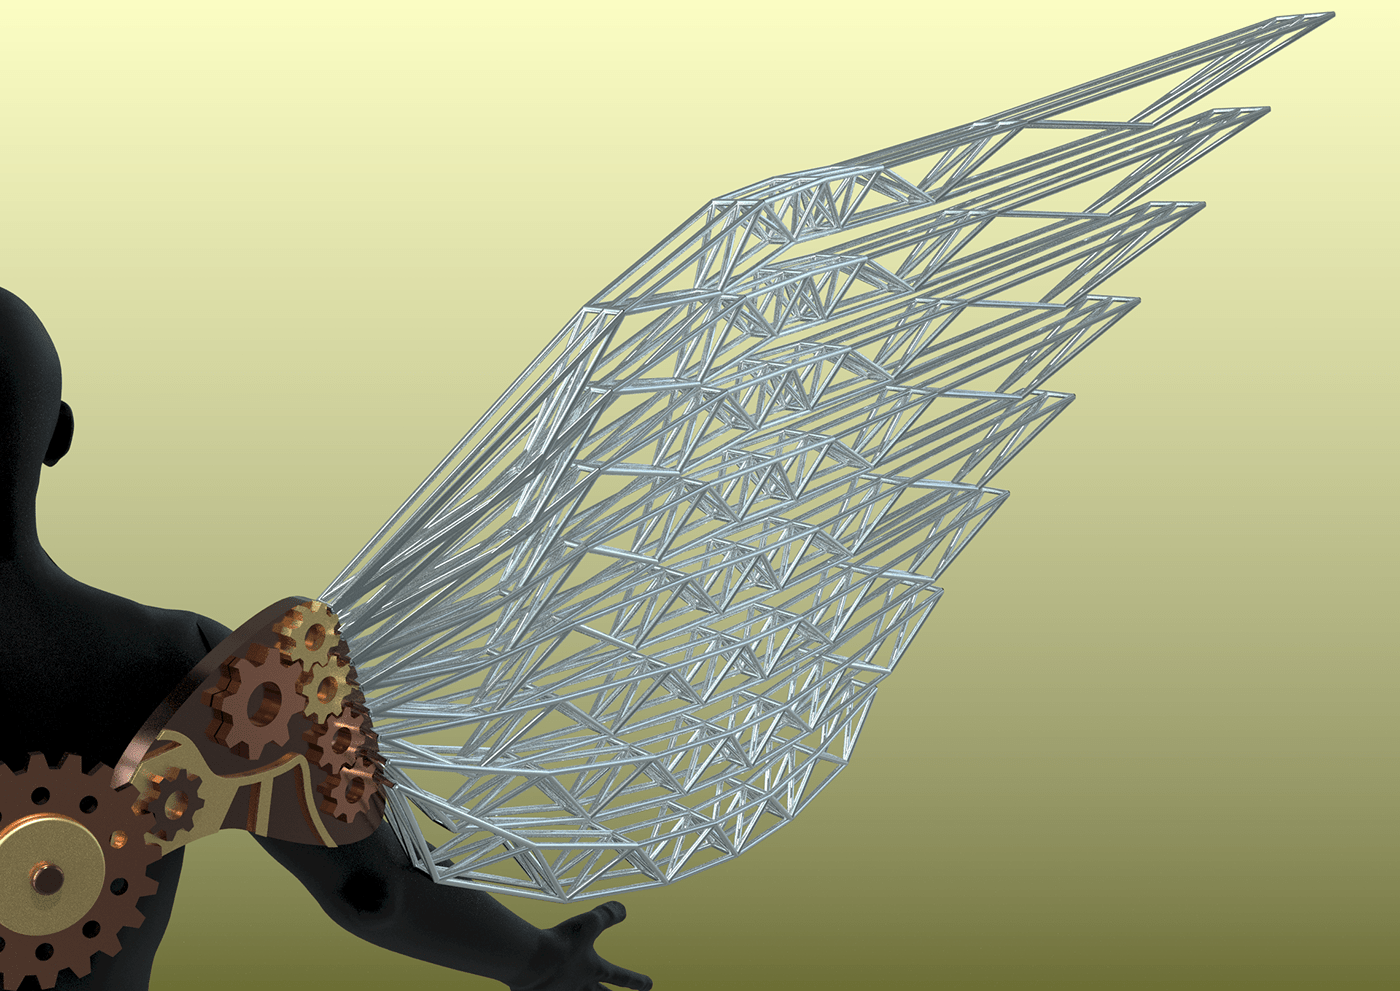 angel gears Grasshopper mechanical rendering STEAMPUNK wings